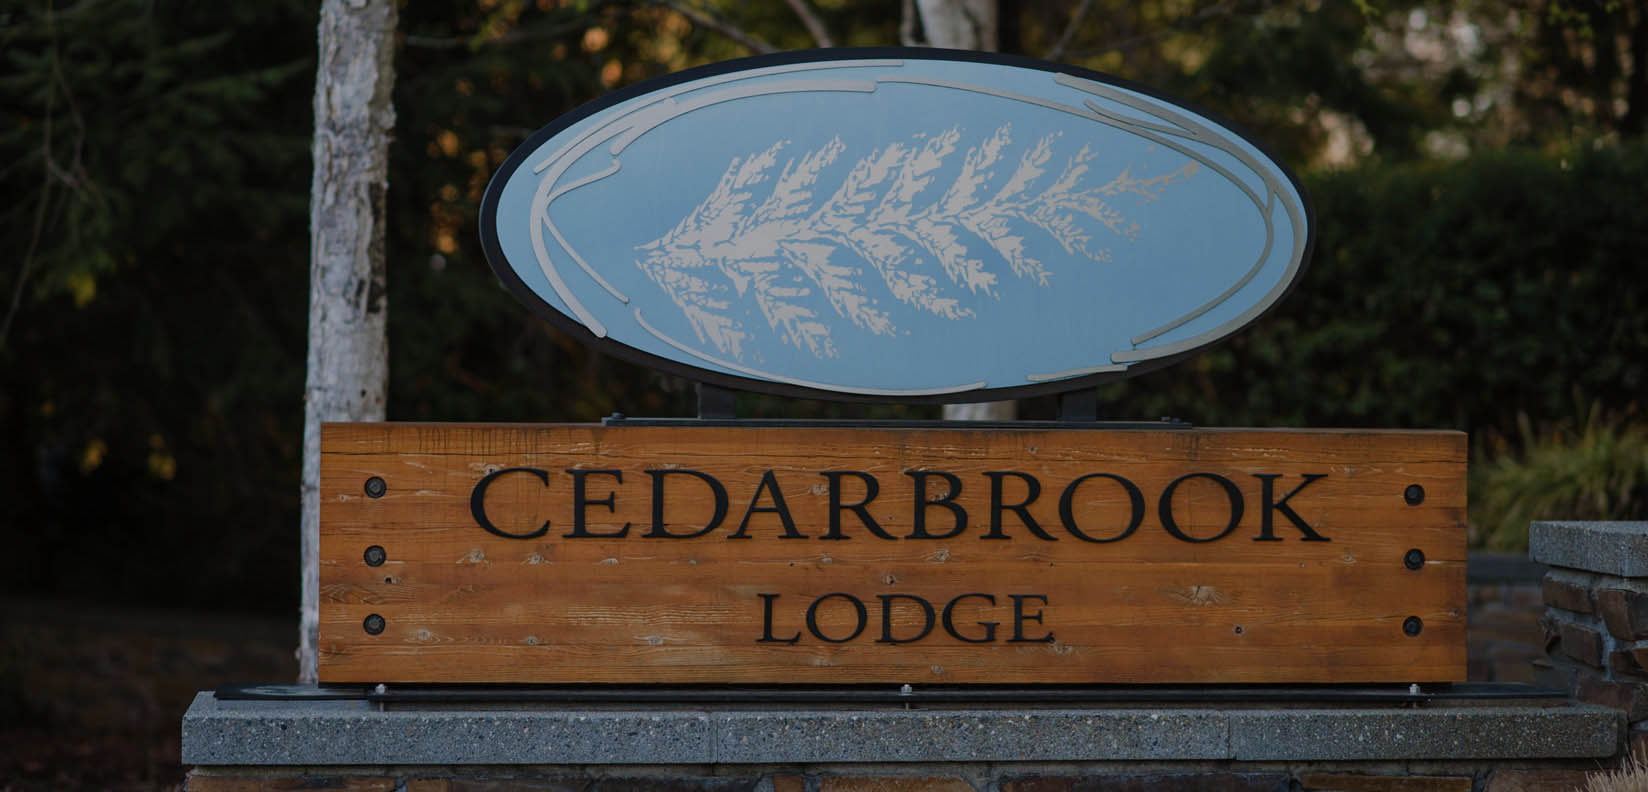 Cedarbrook Lodge sign